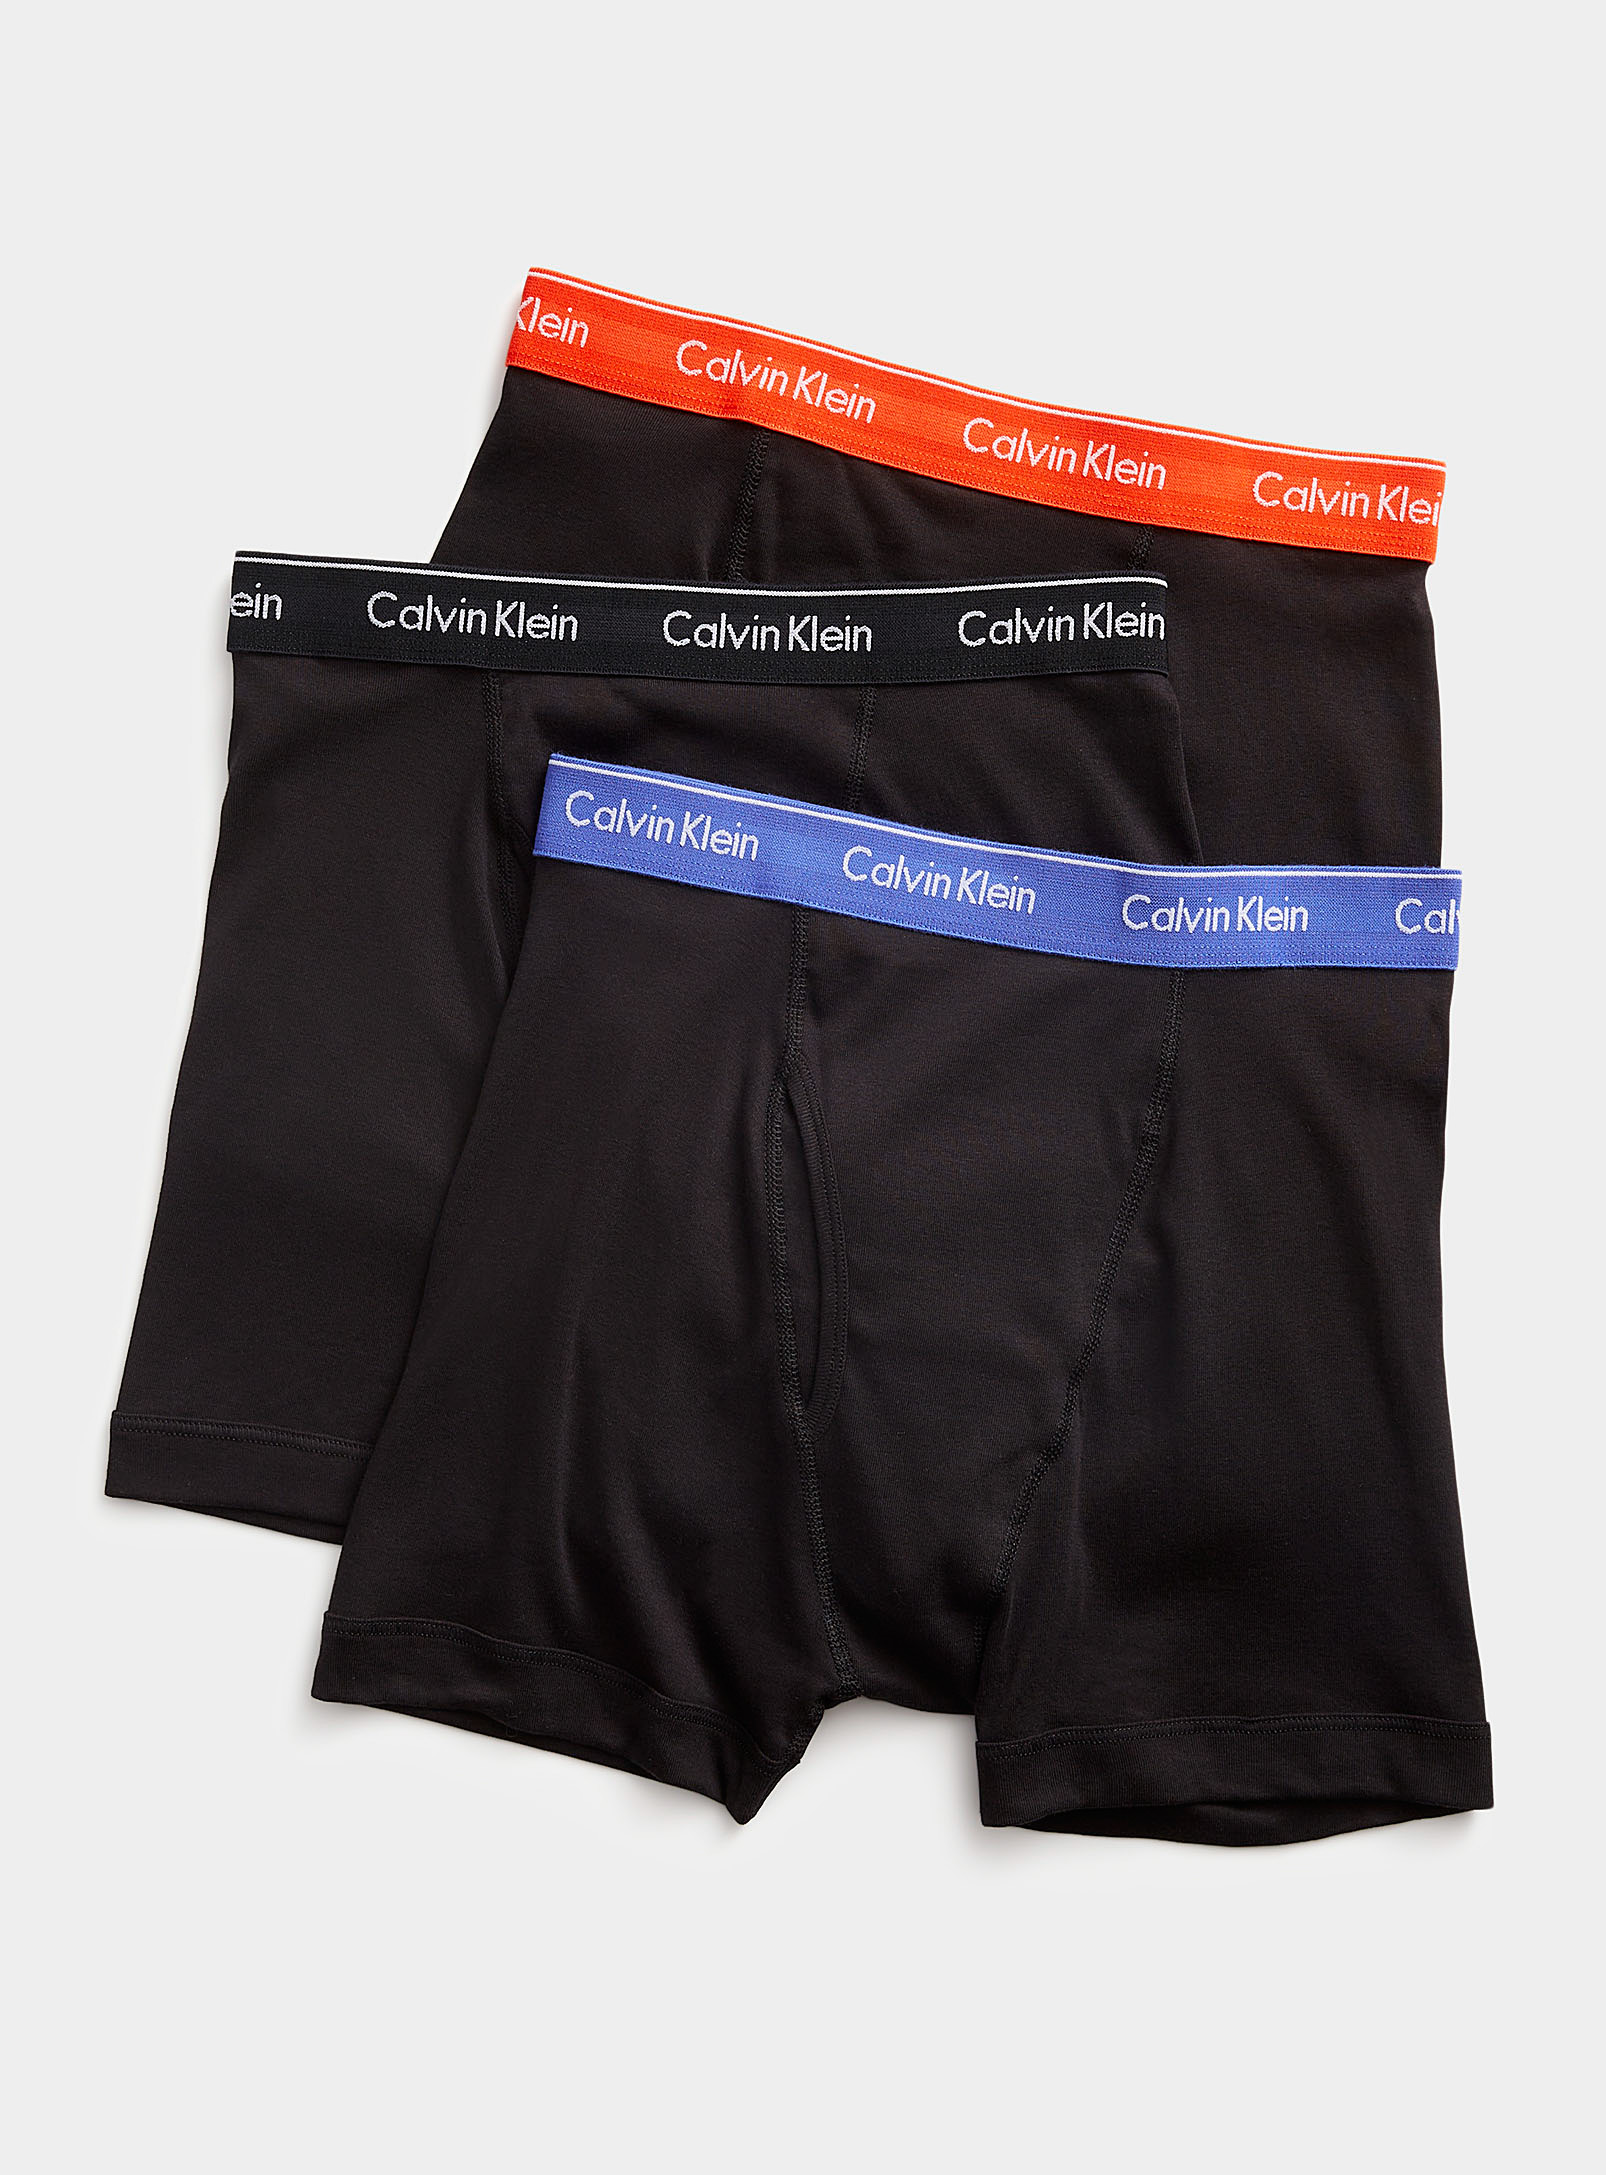 Calvin Klein - Les boxeurs longs pur coton noirs Emballage de 3